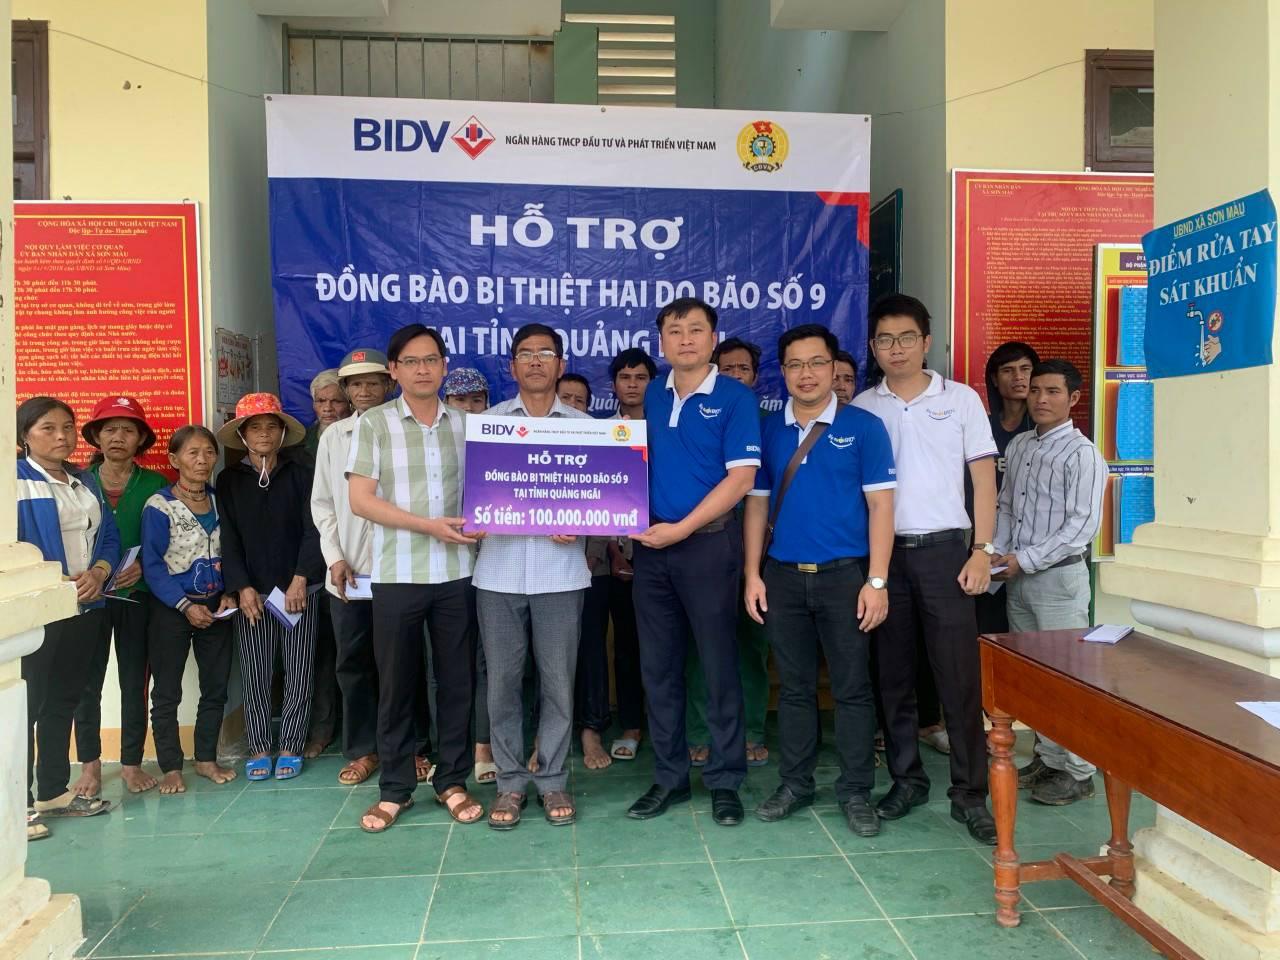 Sơn Màu: Nhận quà hỗ trợ từ ngân hàng BIDV Quảng Ngãi